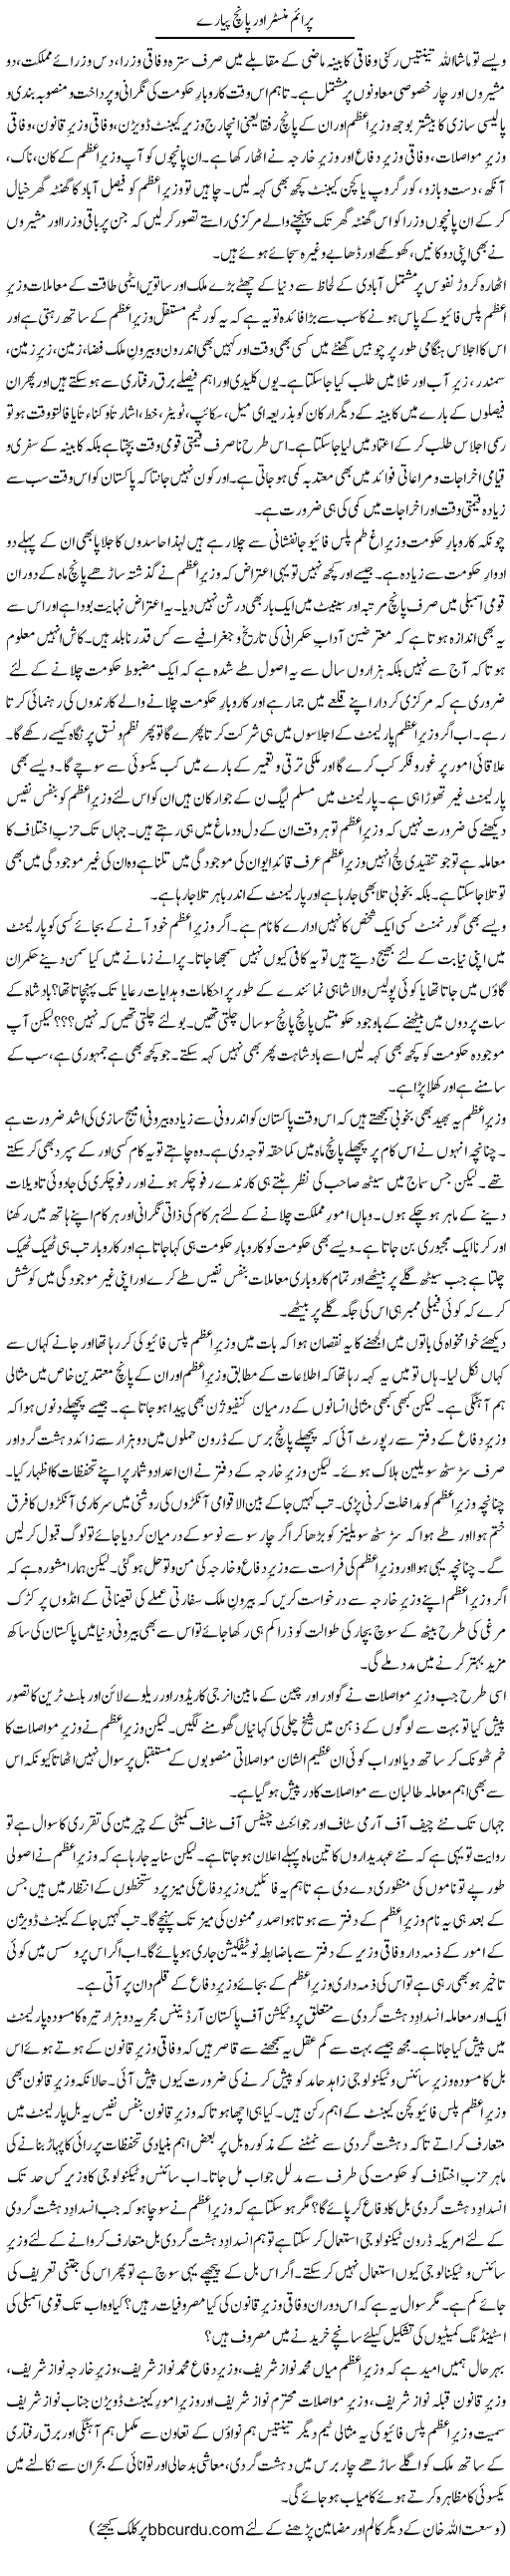 Prime Minister Aur Panch Payare | Wusat Ullah Khan | Daily Urdu Columns